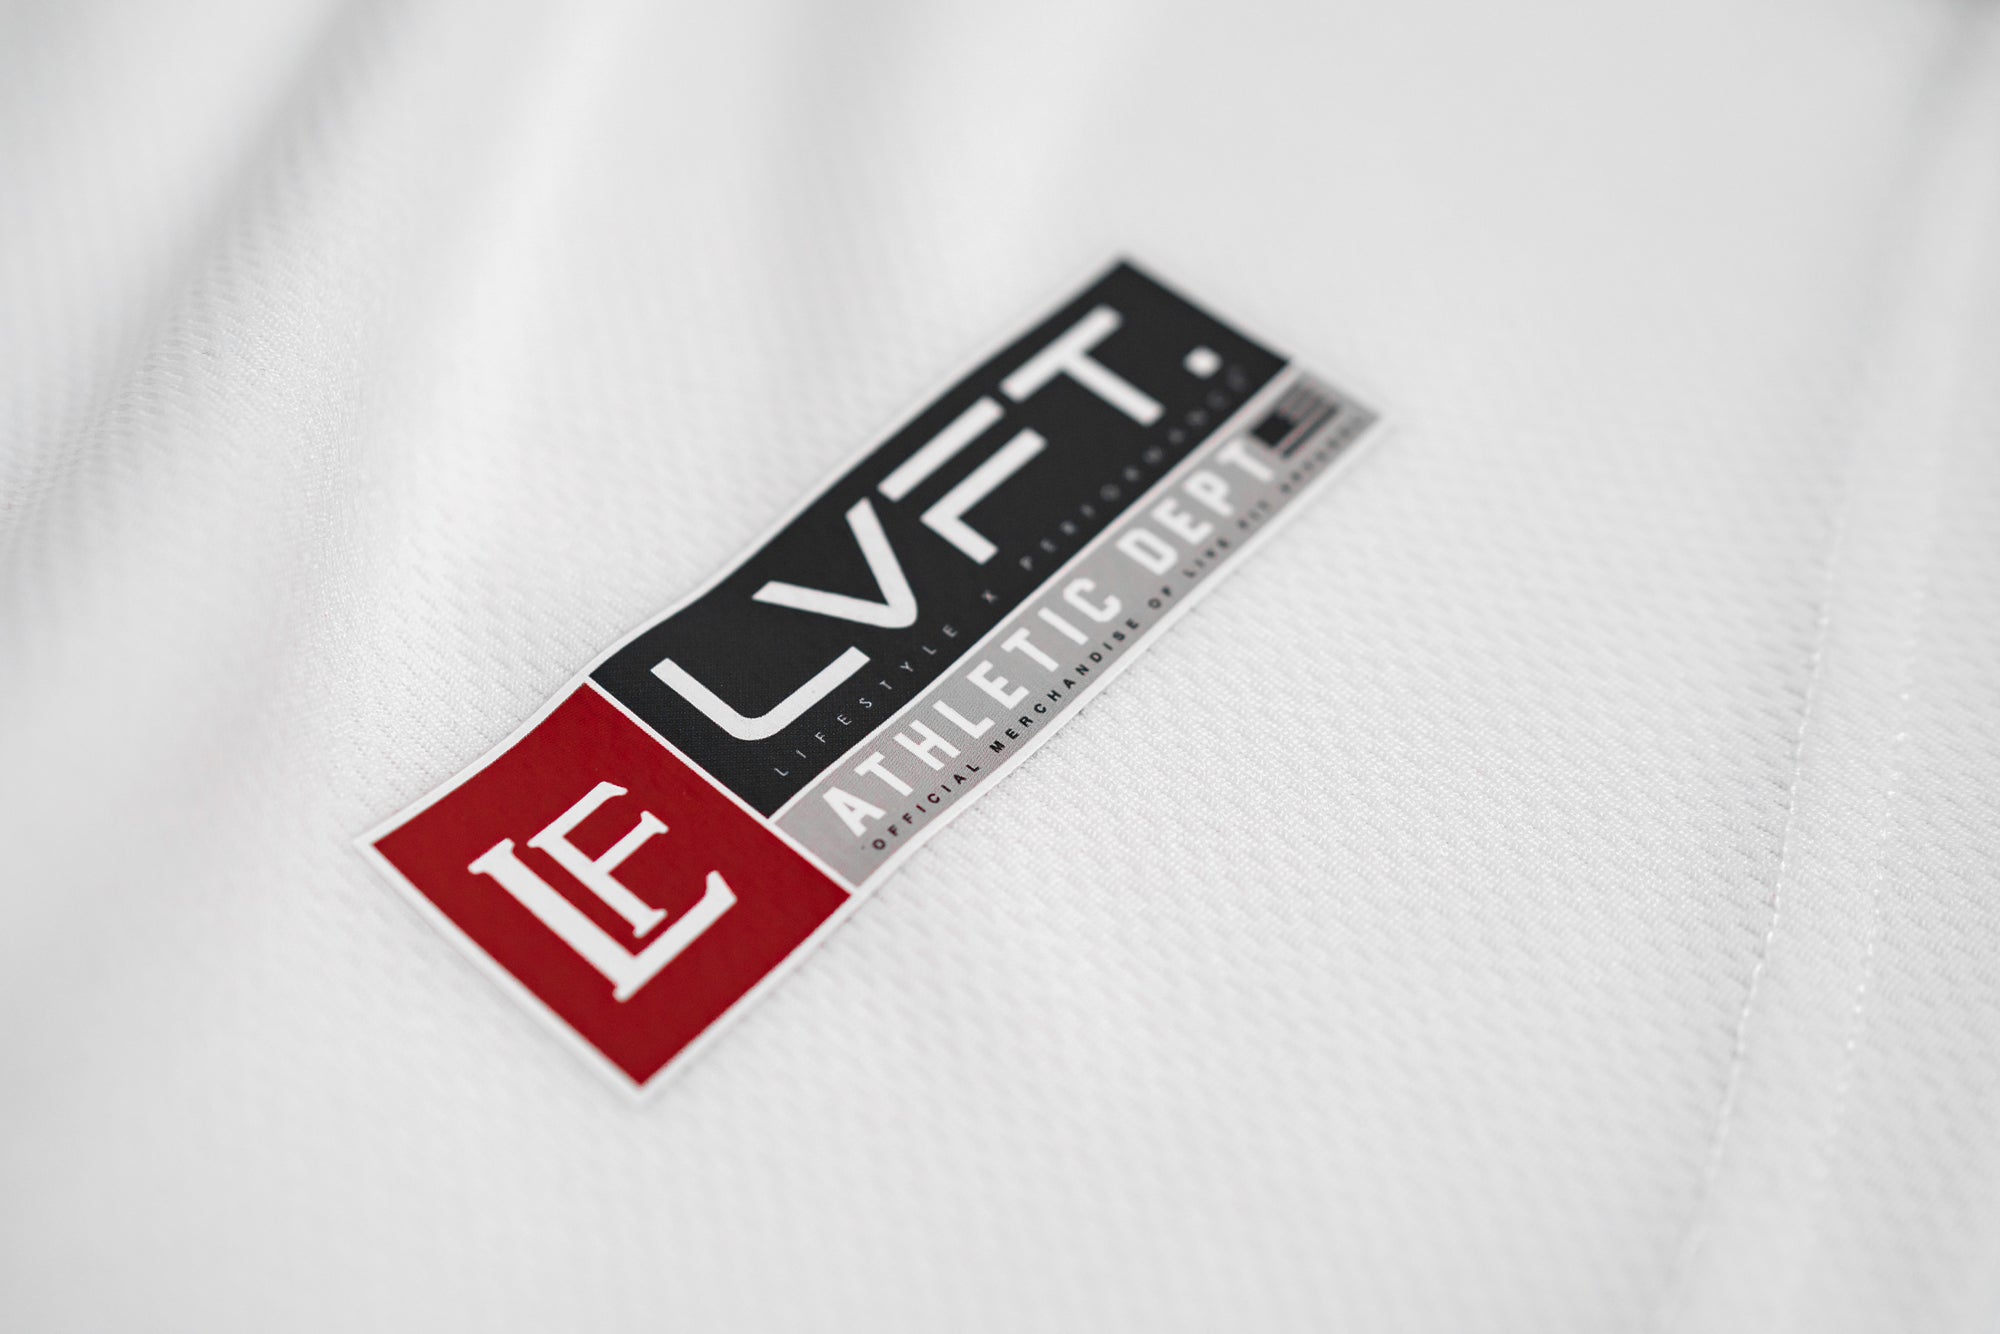 Baseball Jersey - Black/White – LVFT. Capsule